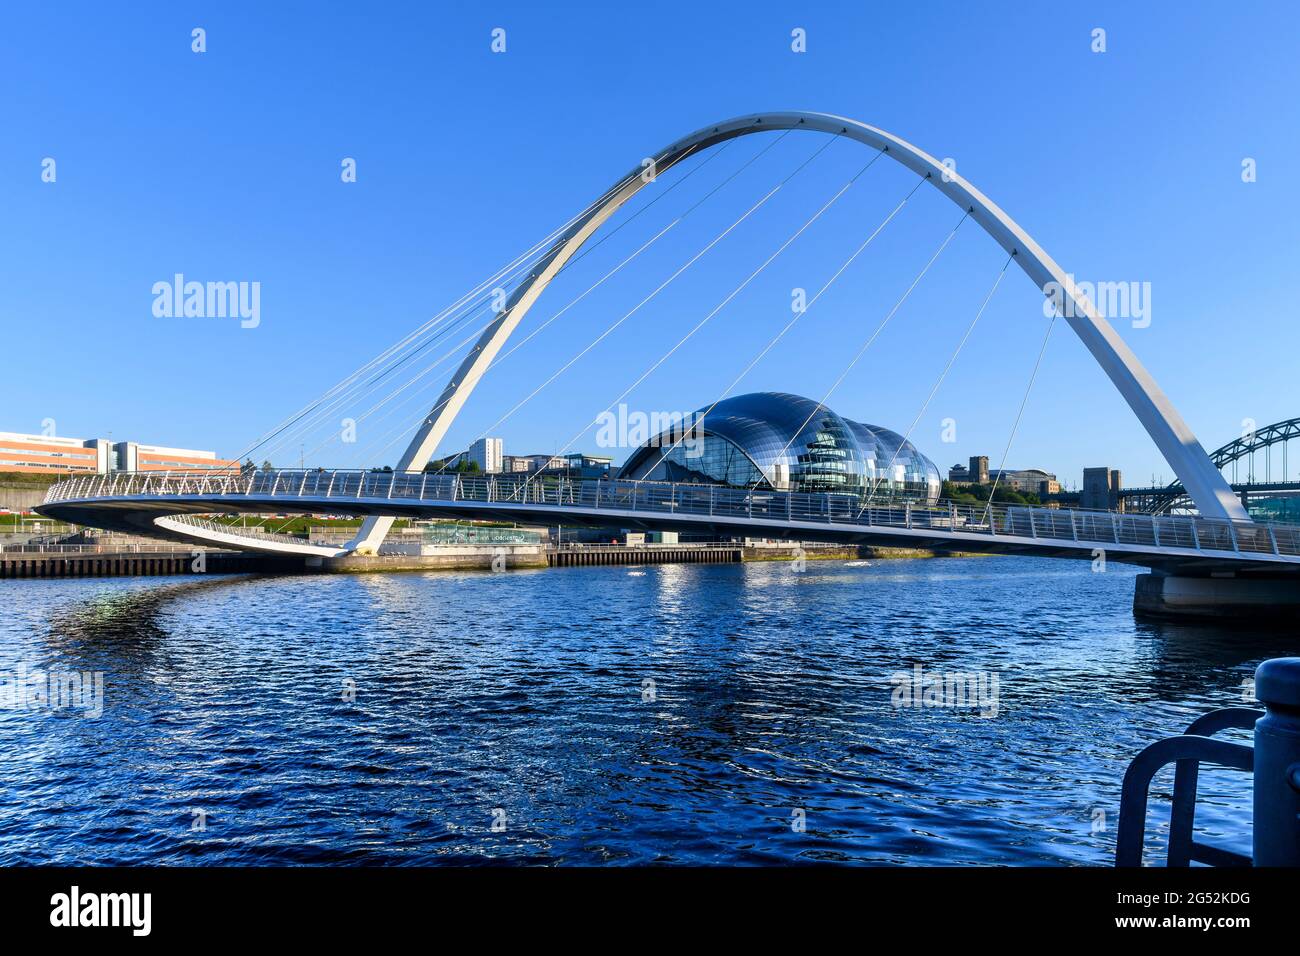 Konzertsaal Sage Gateshead, die Tyne Bridge, die Gateshead mit Newcastle verbindet, und die Gateshead Millennium Bridge für Fußgänger und Radfahrer. Stockfoto